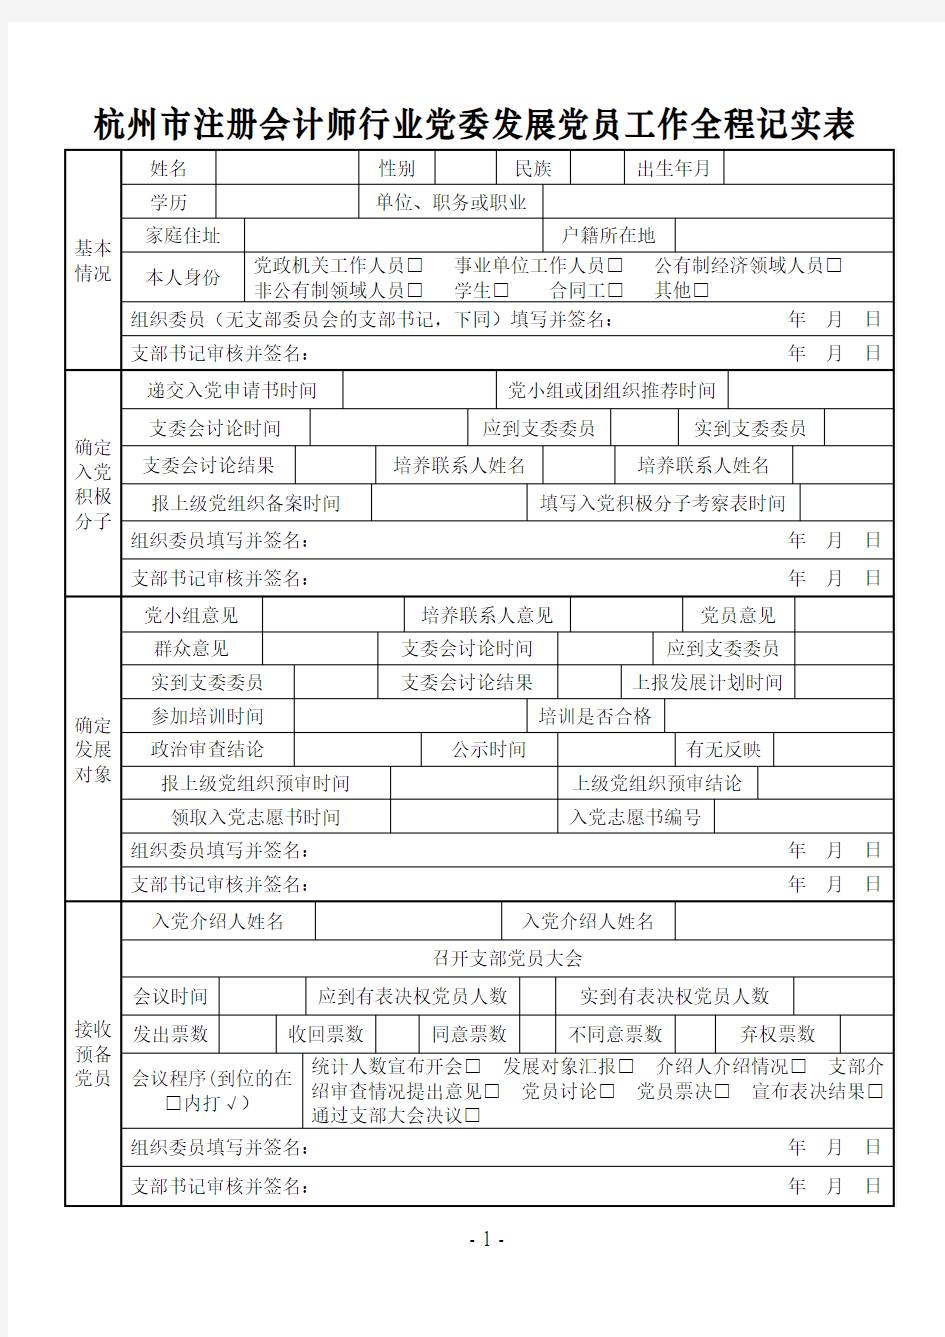 杭州市注册会计师行业党委发展党员工作全程记实表